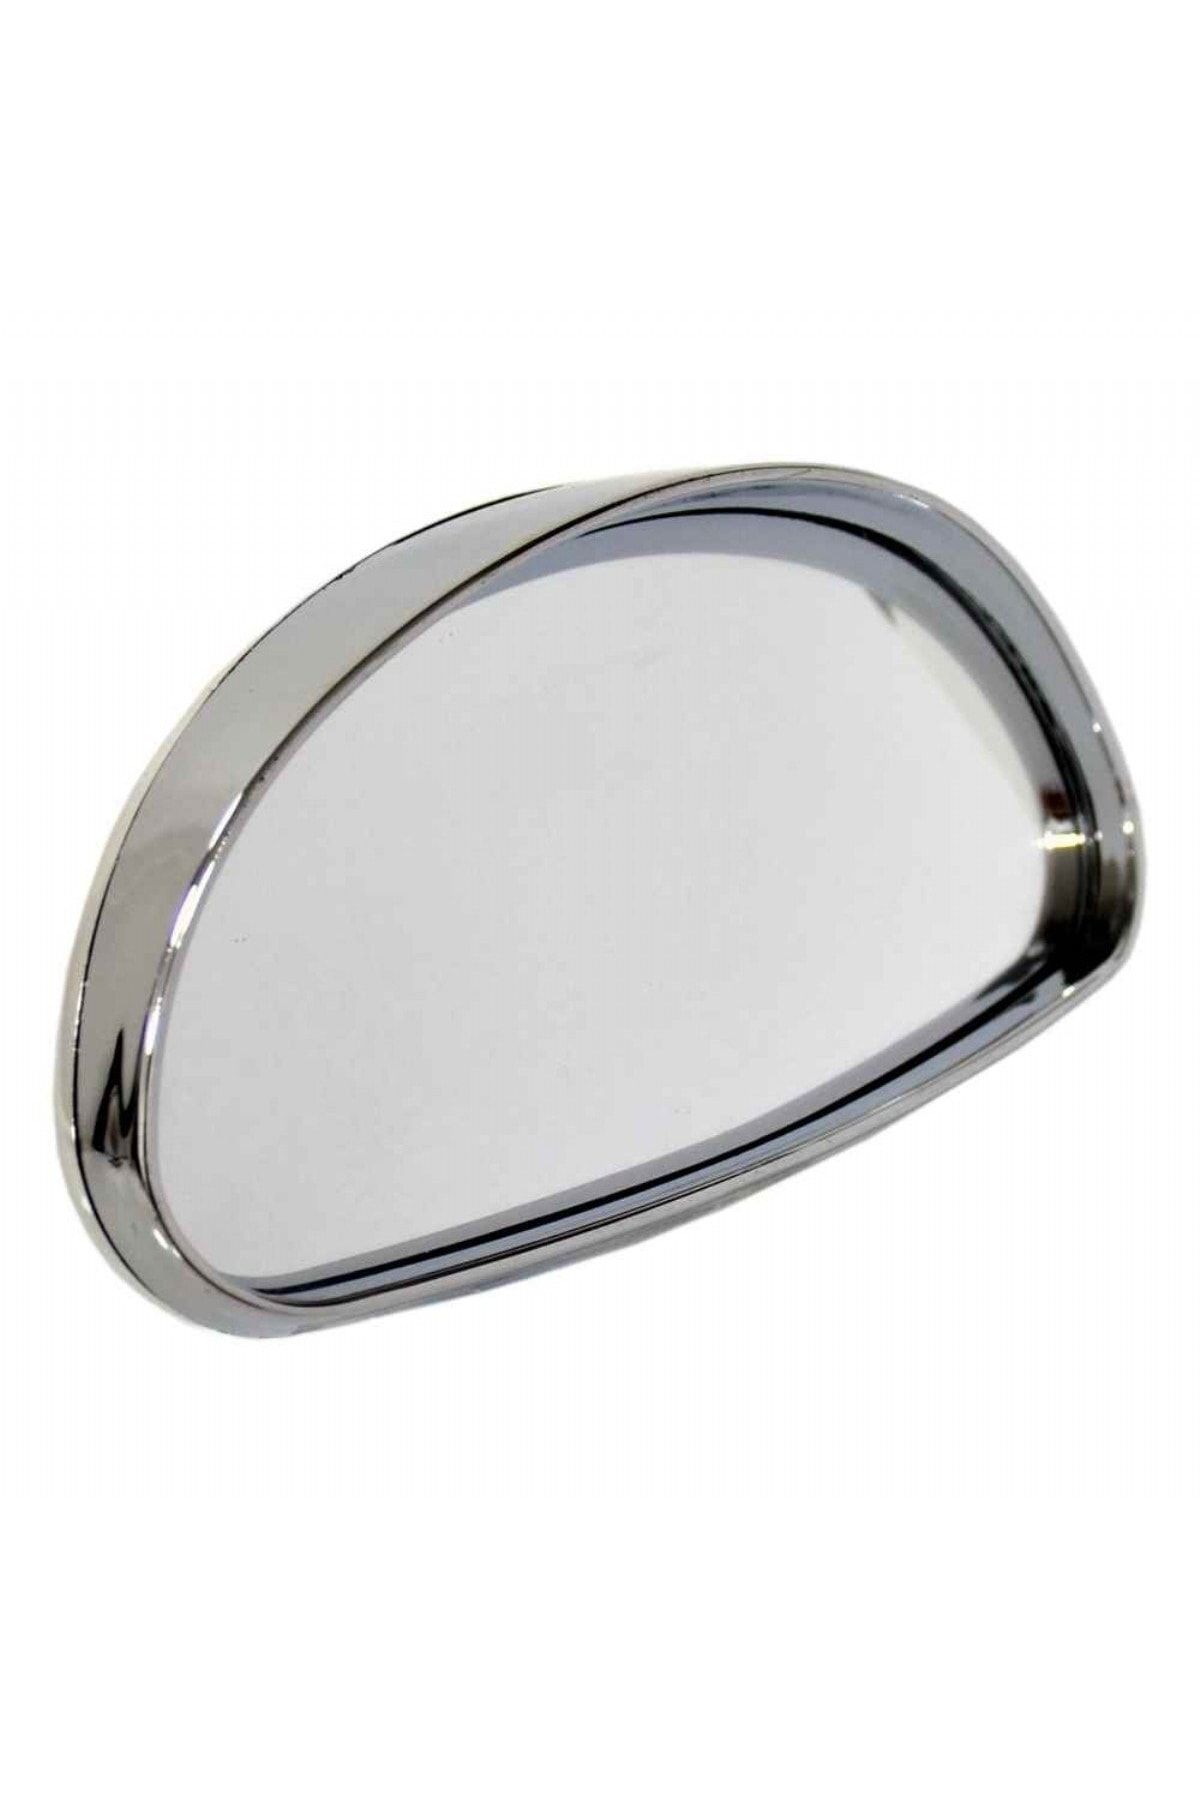 Carub Ayna Üstü Ilave Dış Oval 14x7,5cm Nikel Büyük